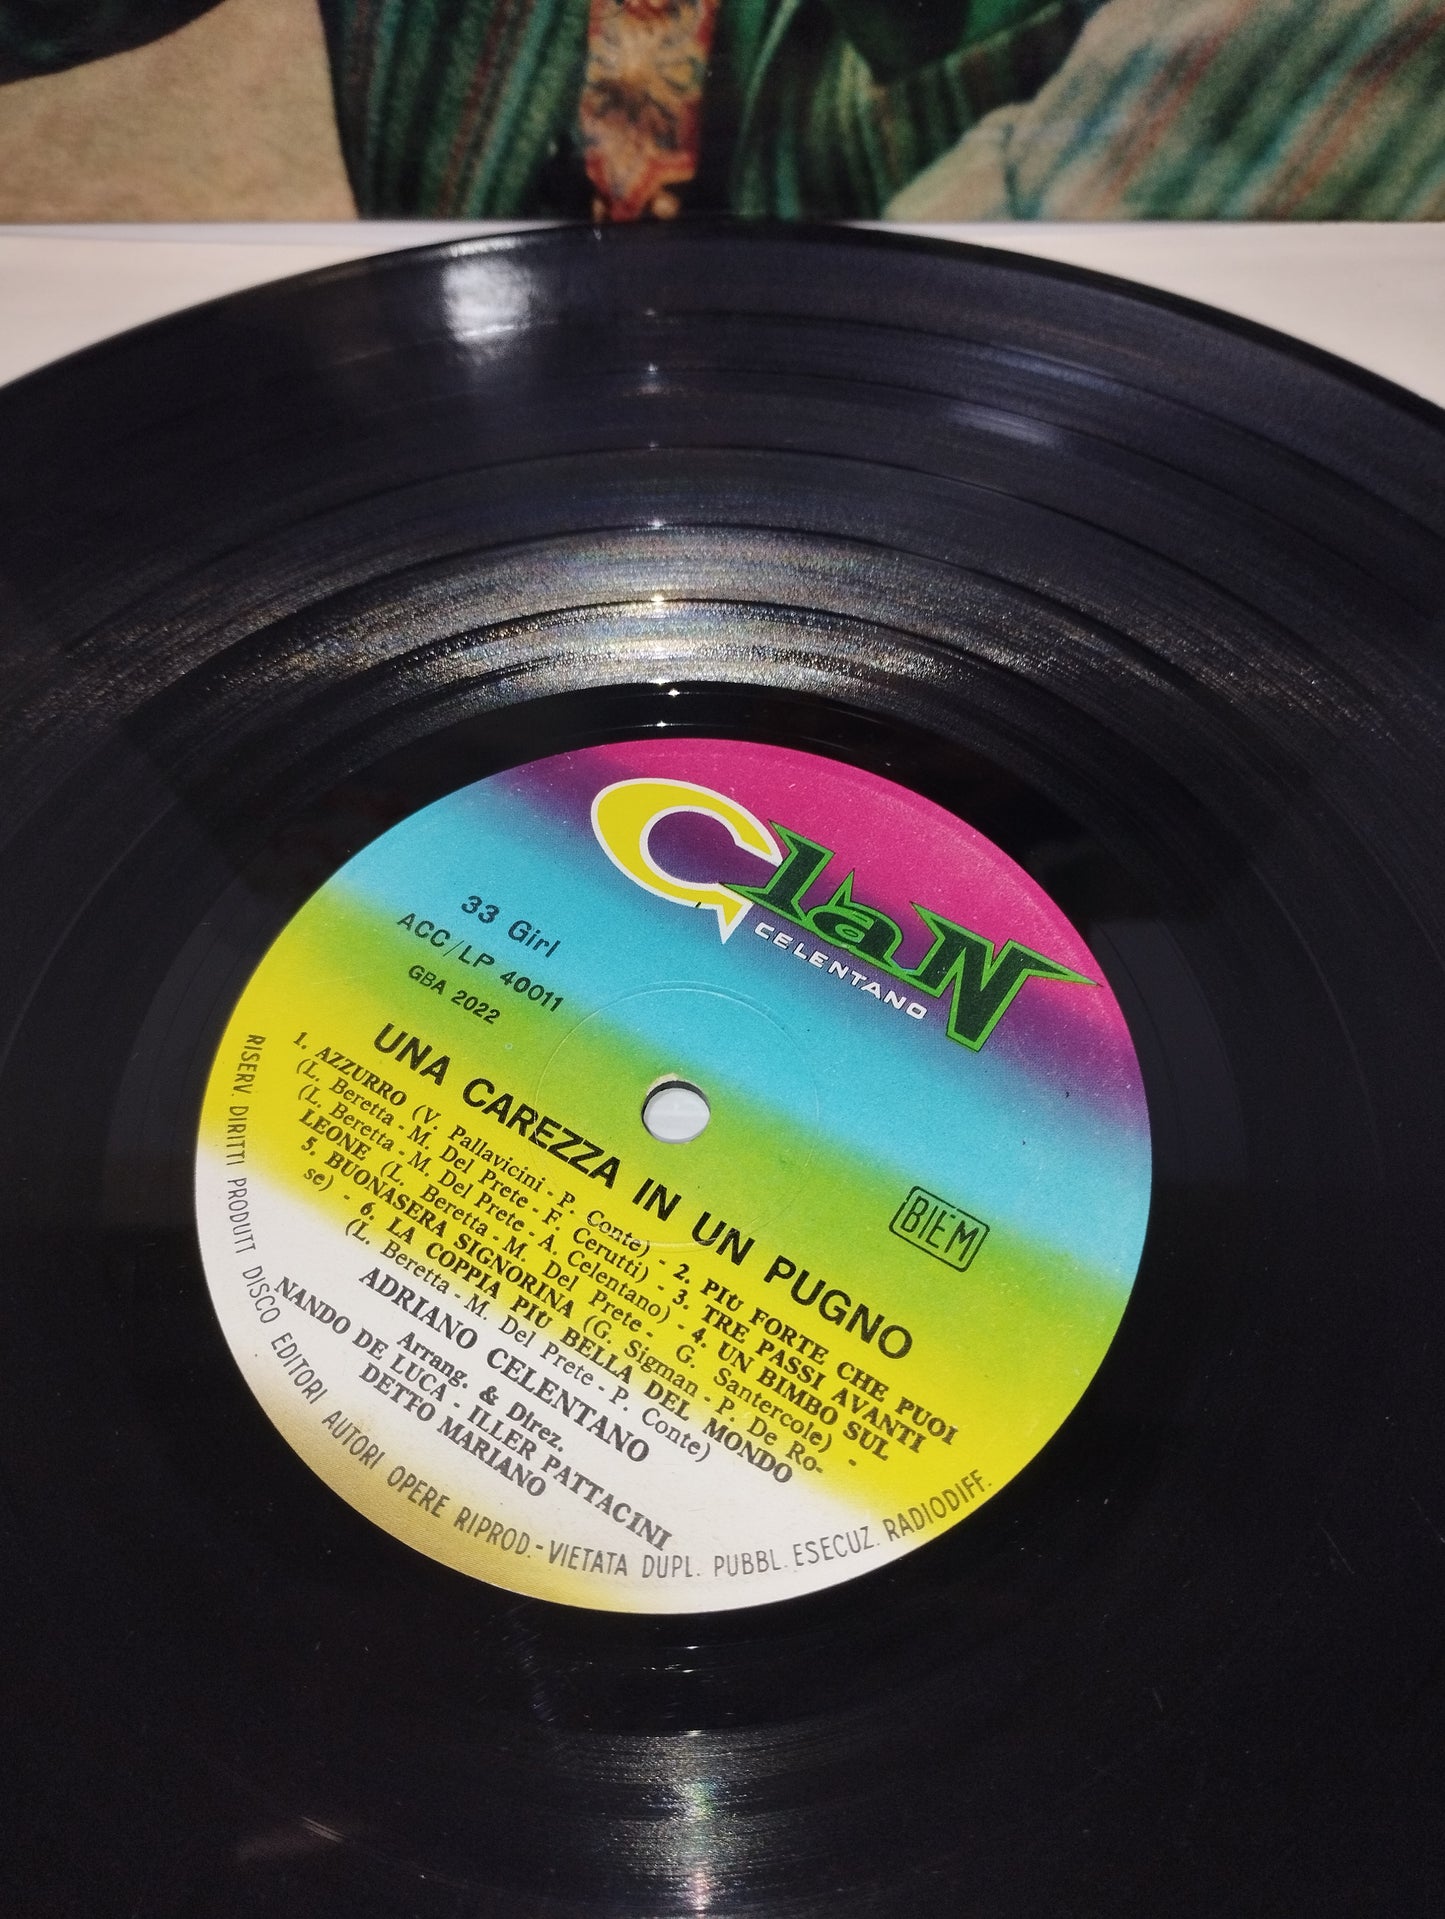 Azzurro/Una Carezza In Un Pugno Adriano Celentano LP 33 giri
Edito negli anni 60 da Clan Cod .ACC.LP.40011